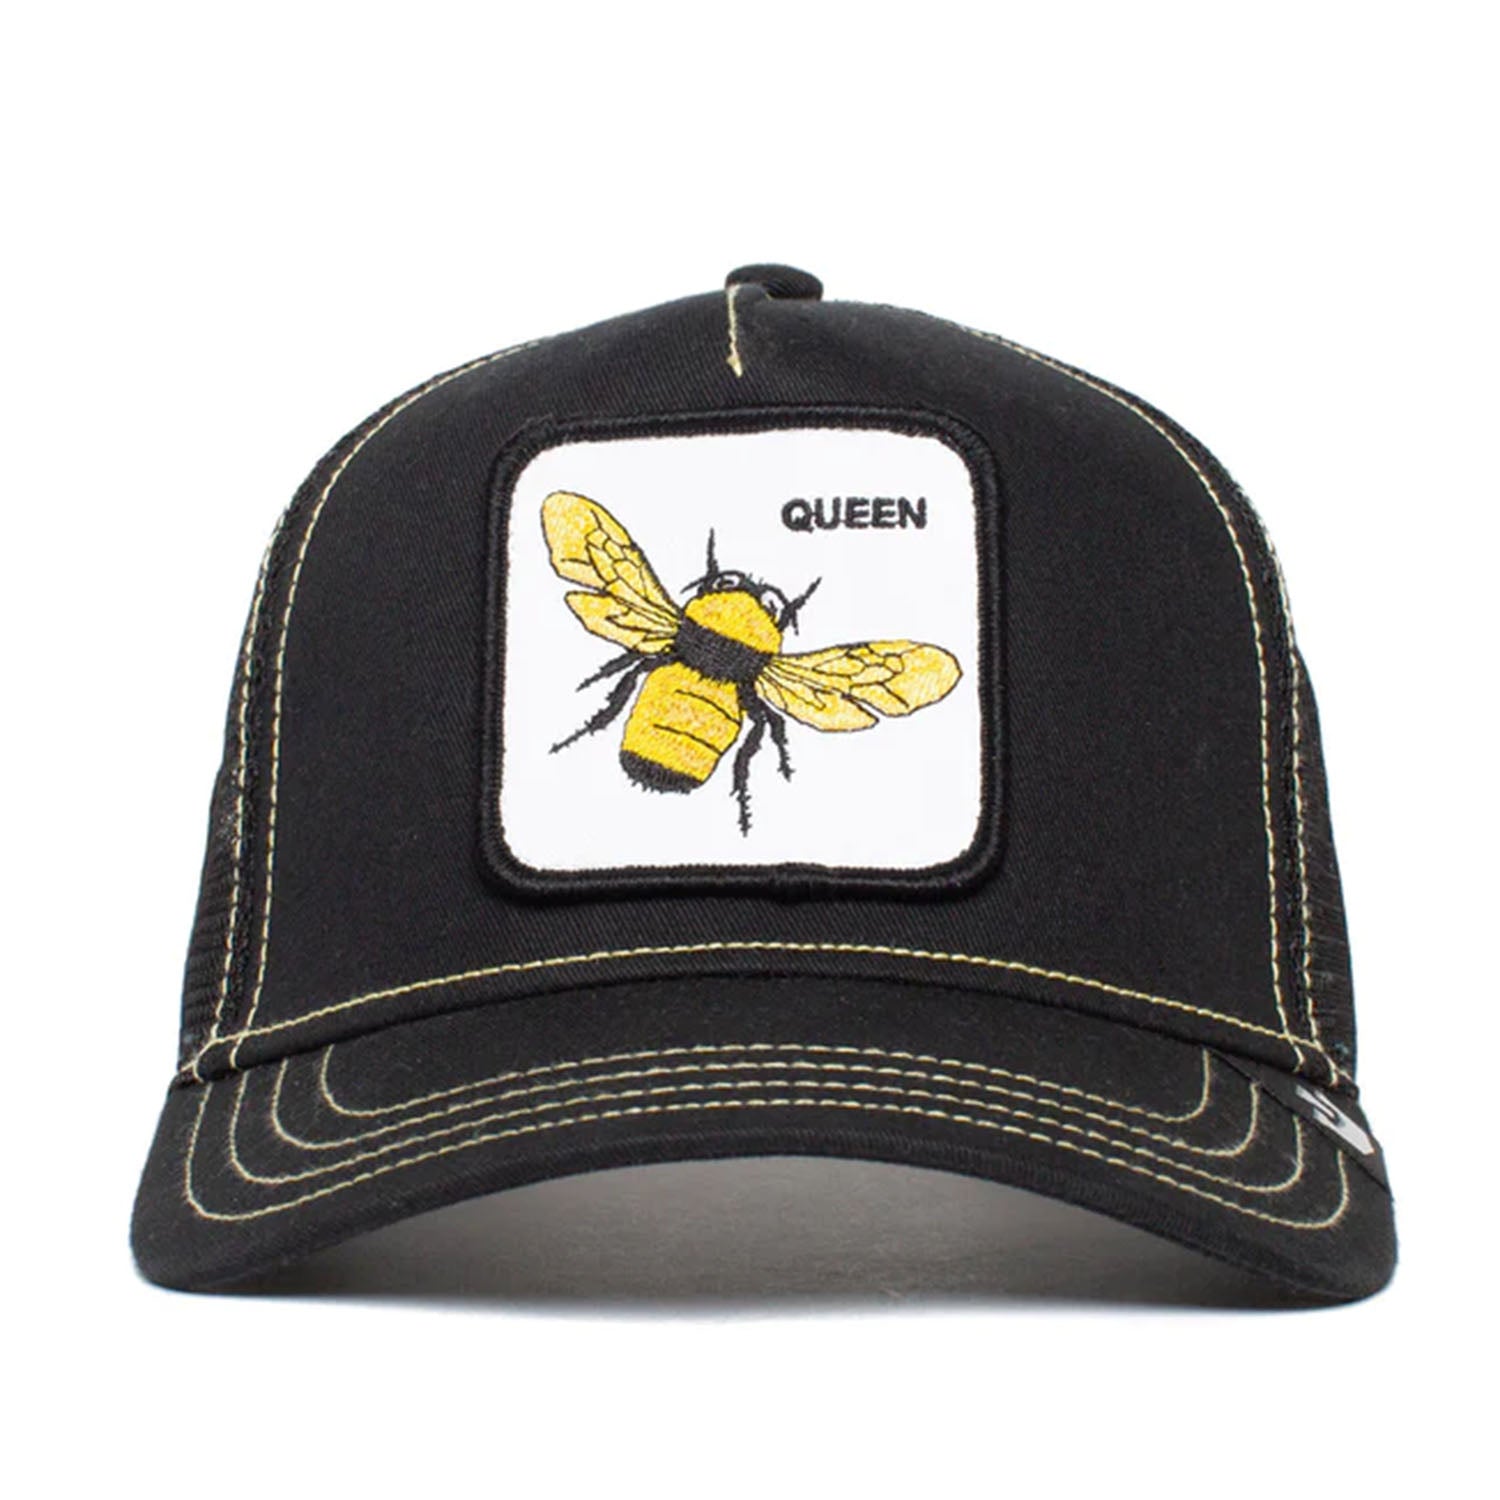 Goorin Bros. The Queen Bee Trucker Hat in Black